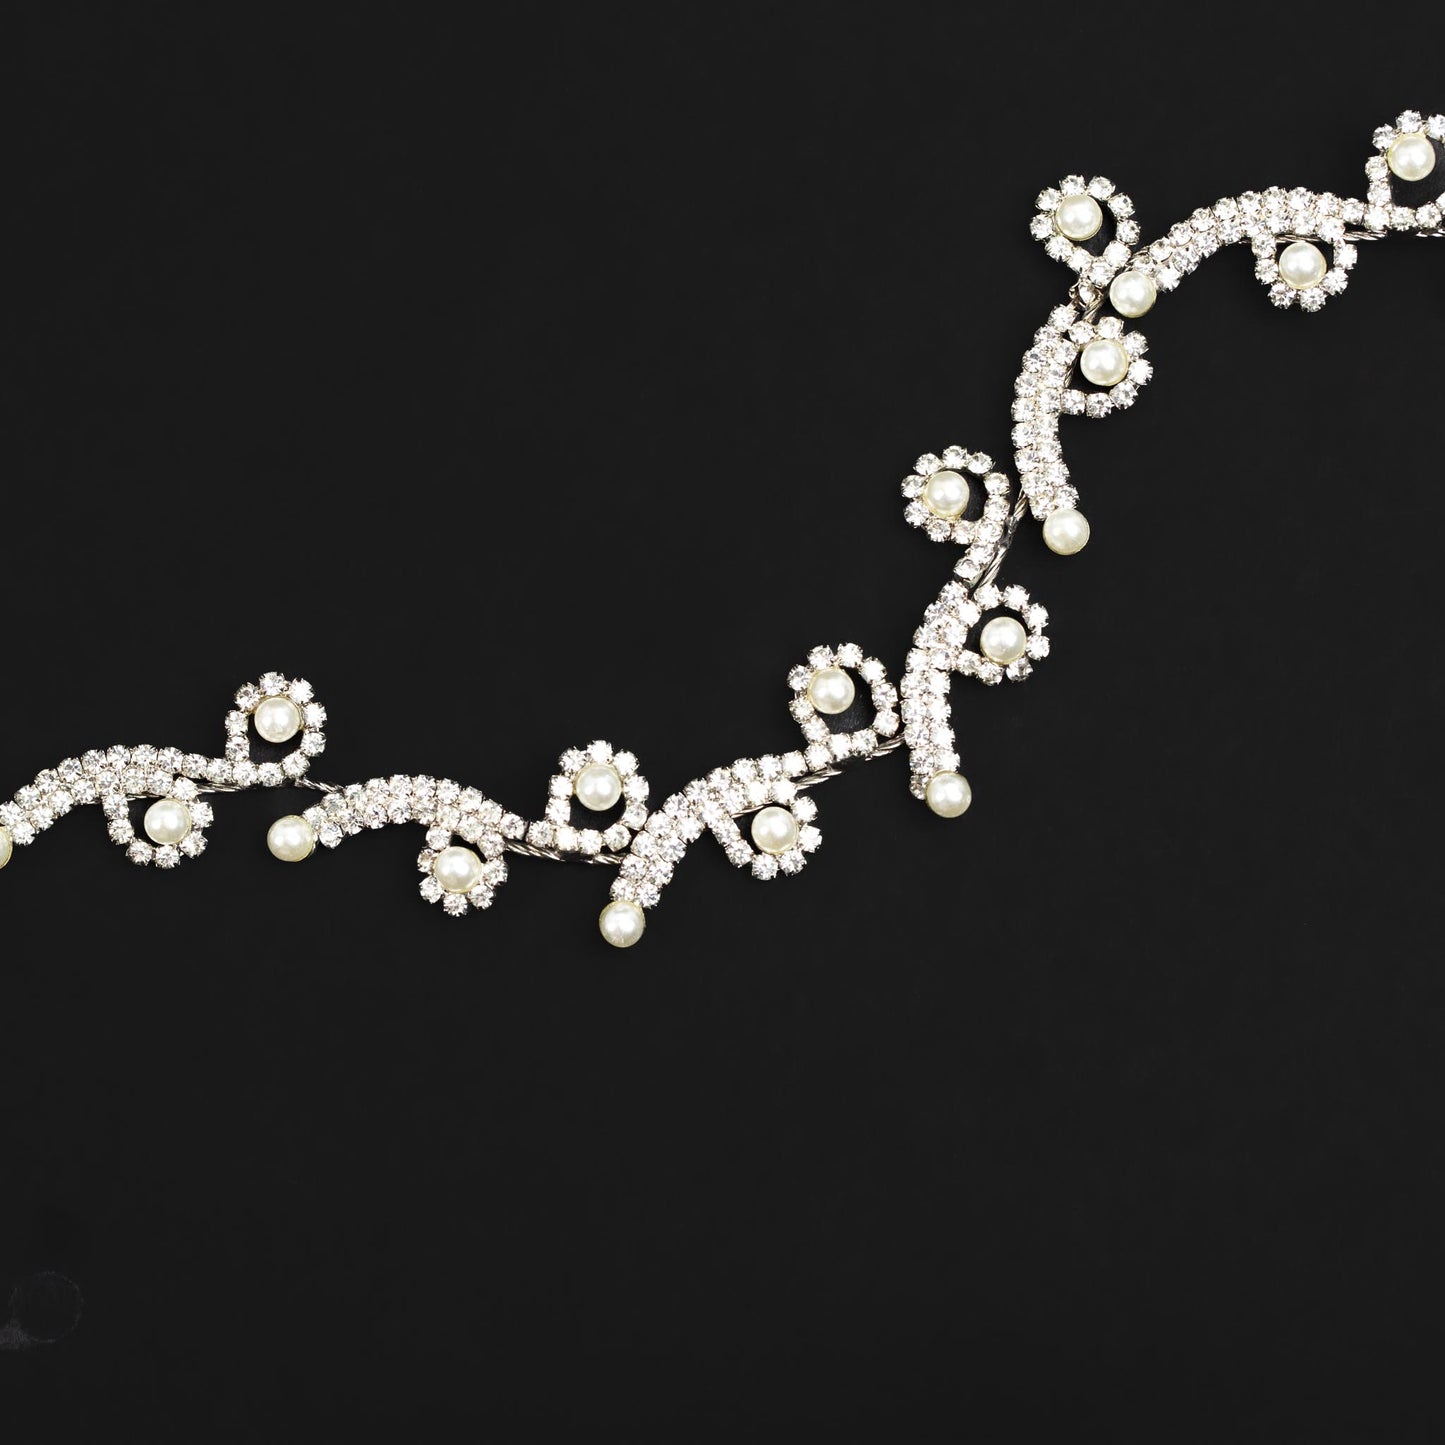 Diademă elegantă maleabilă cu strasuri, perle - Argintiu